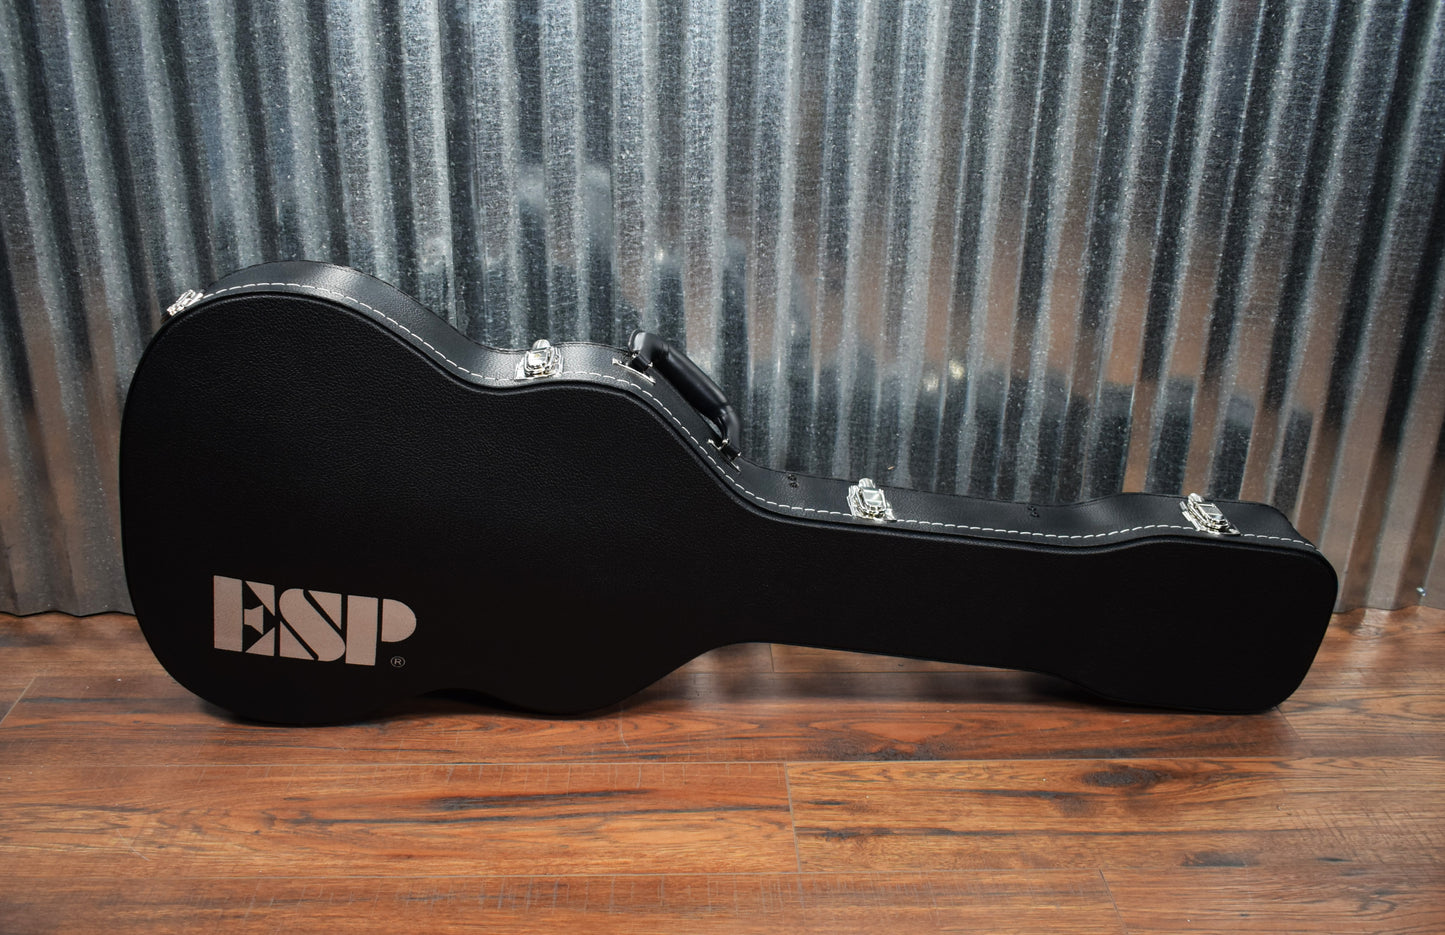 ESP LTD TL-6 Thinline Acoustic Electric Guitar Black LTL6BLK & Case #1541